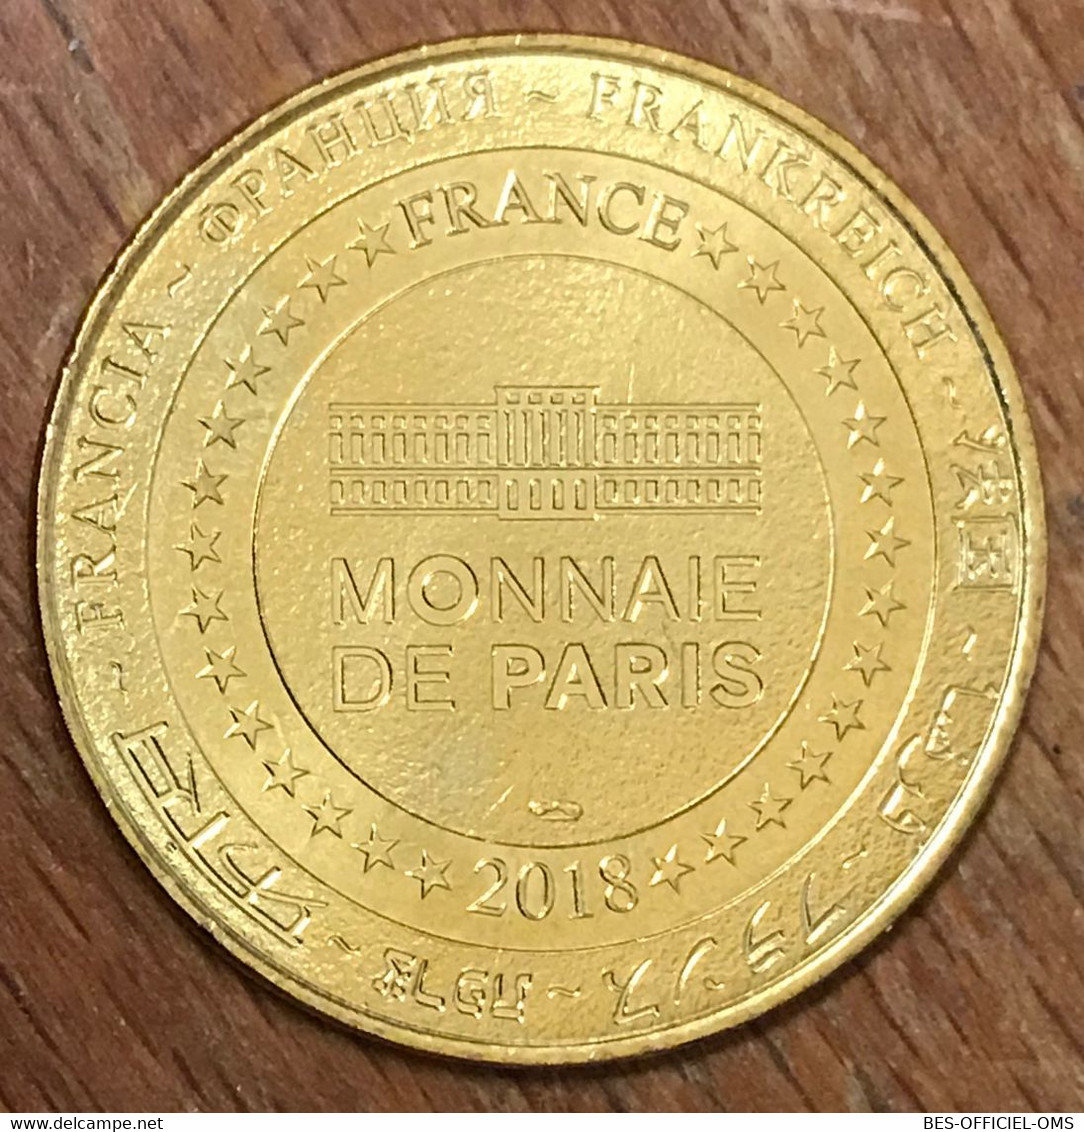 77 DISNEYLAND N°35 RATATOUILLE DISNEY MDP 2018 MÉDAILLE MONNAIE DE PARIS JETON TOURISTIQUE MEDALS COINS TOKENS - 2018